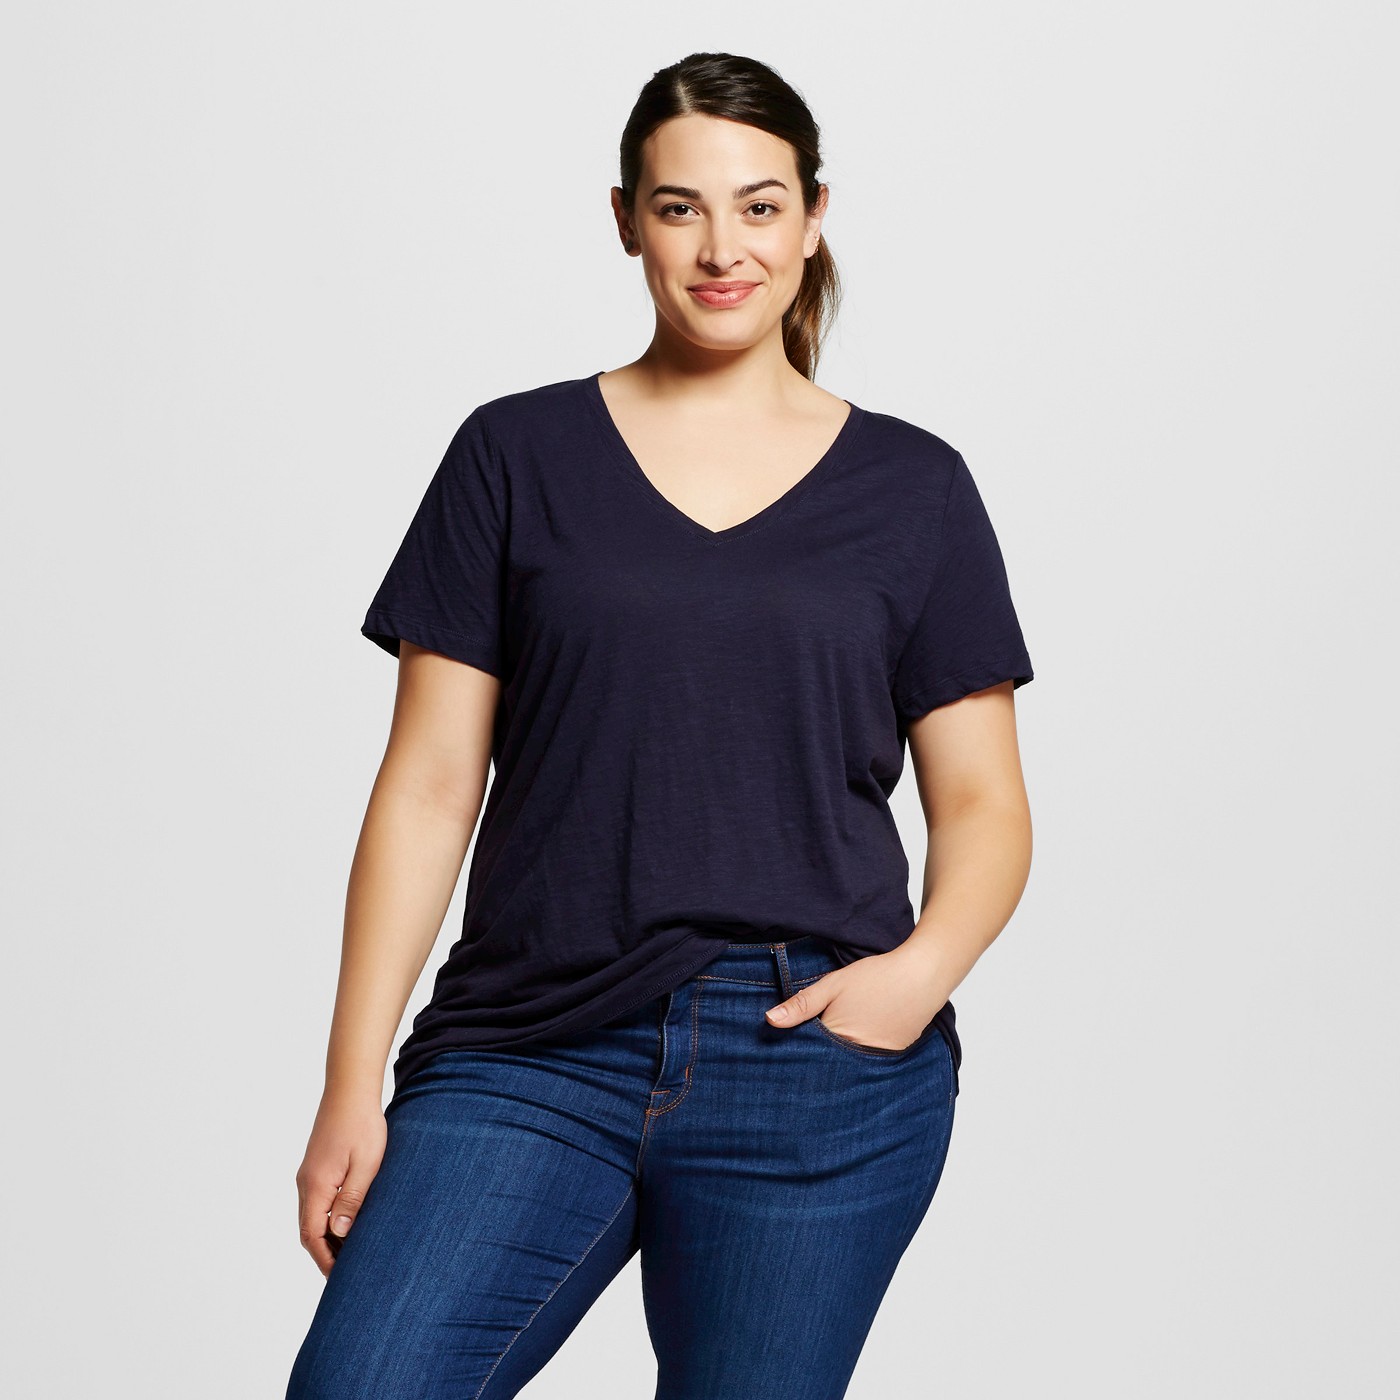 Women's Plus Size Core V-Neck T-Shirt - Ava & Vivâ¢ - image 1 of 2